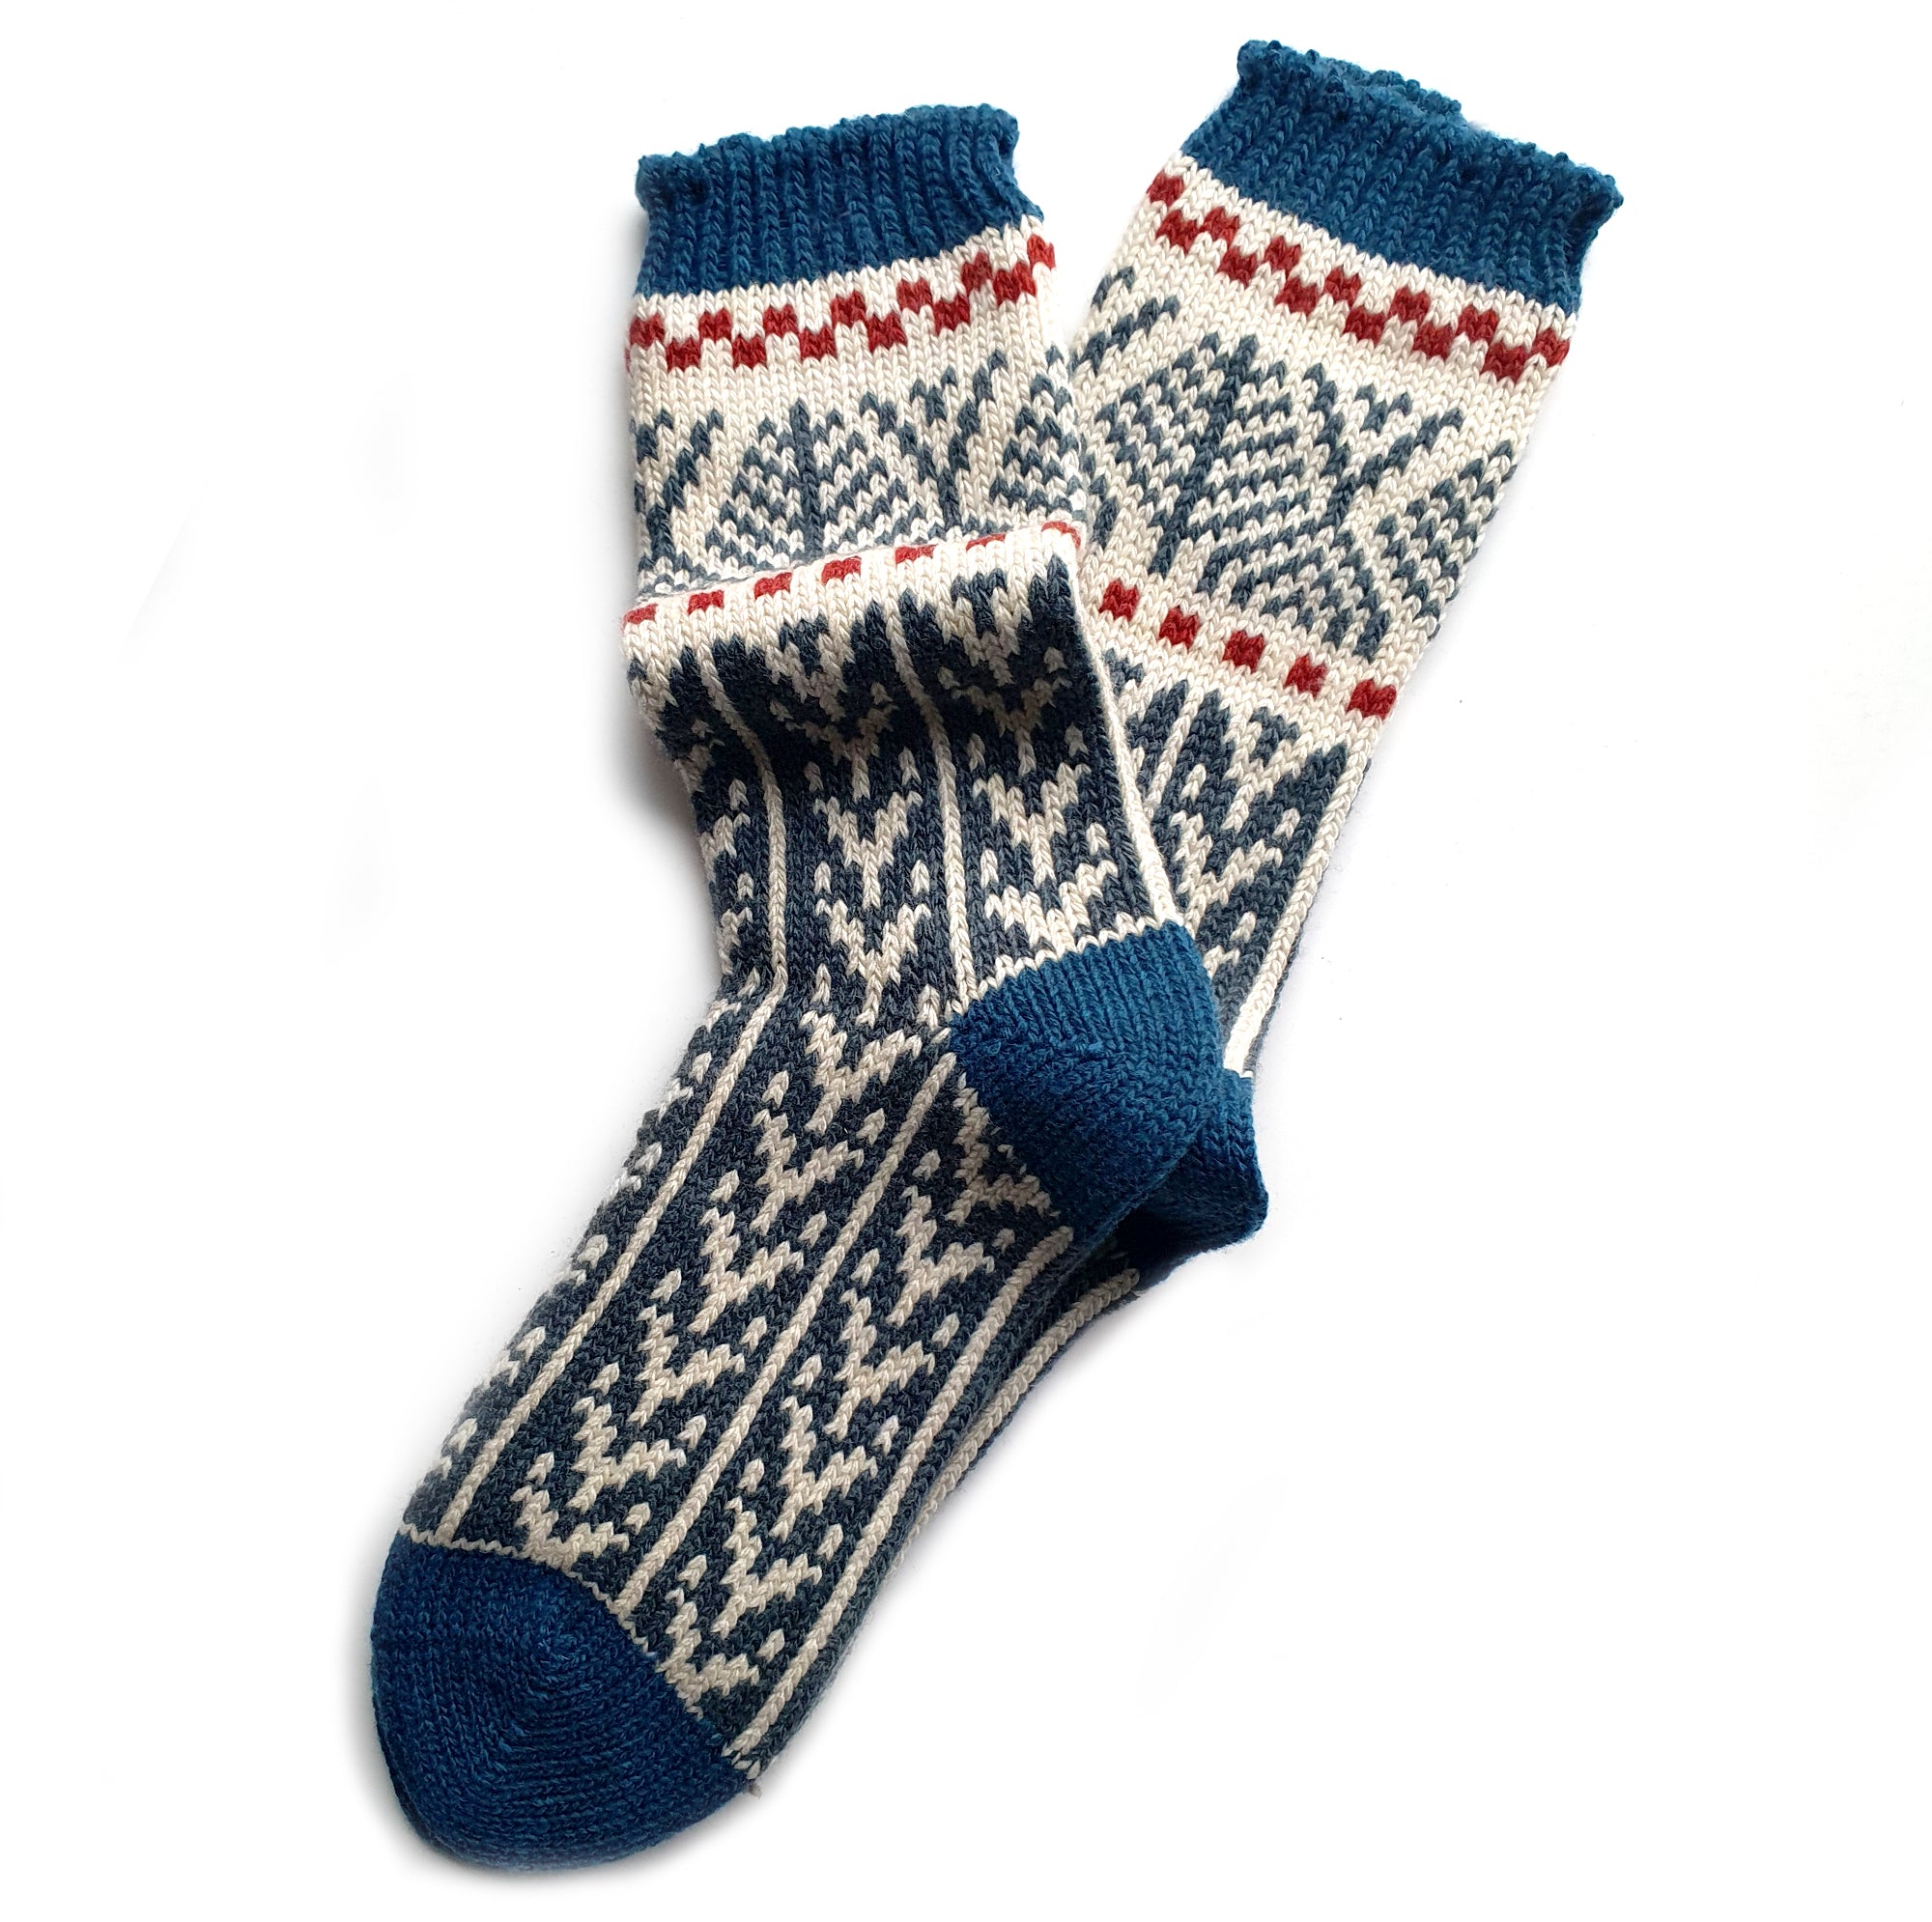 Women's patterned socks